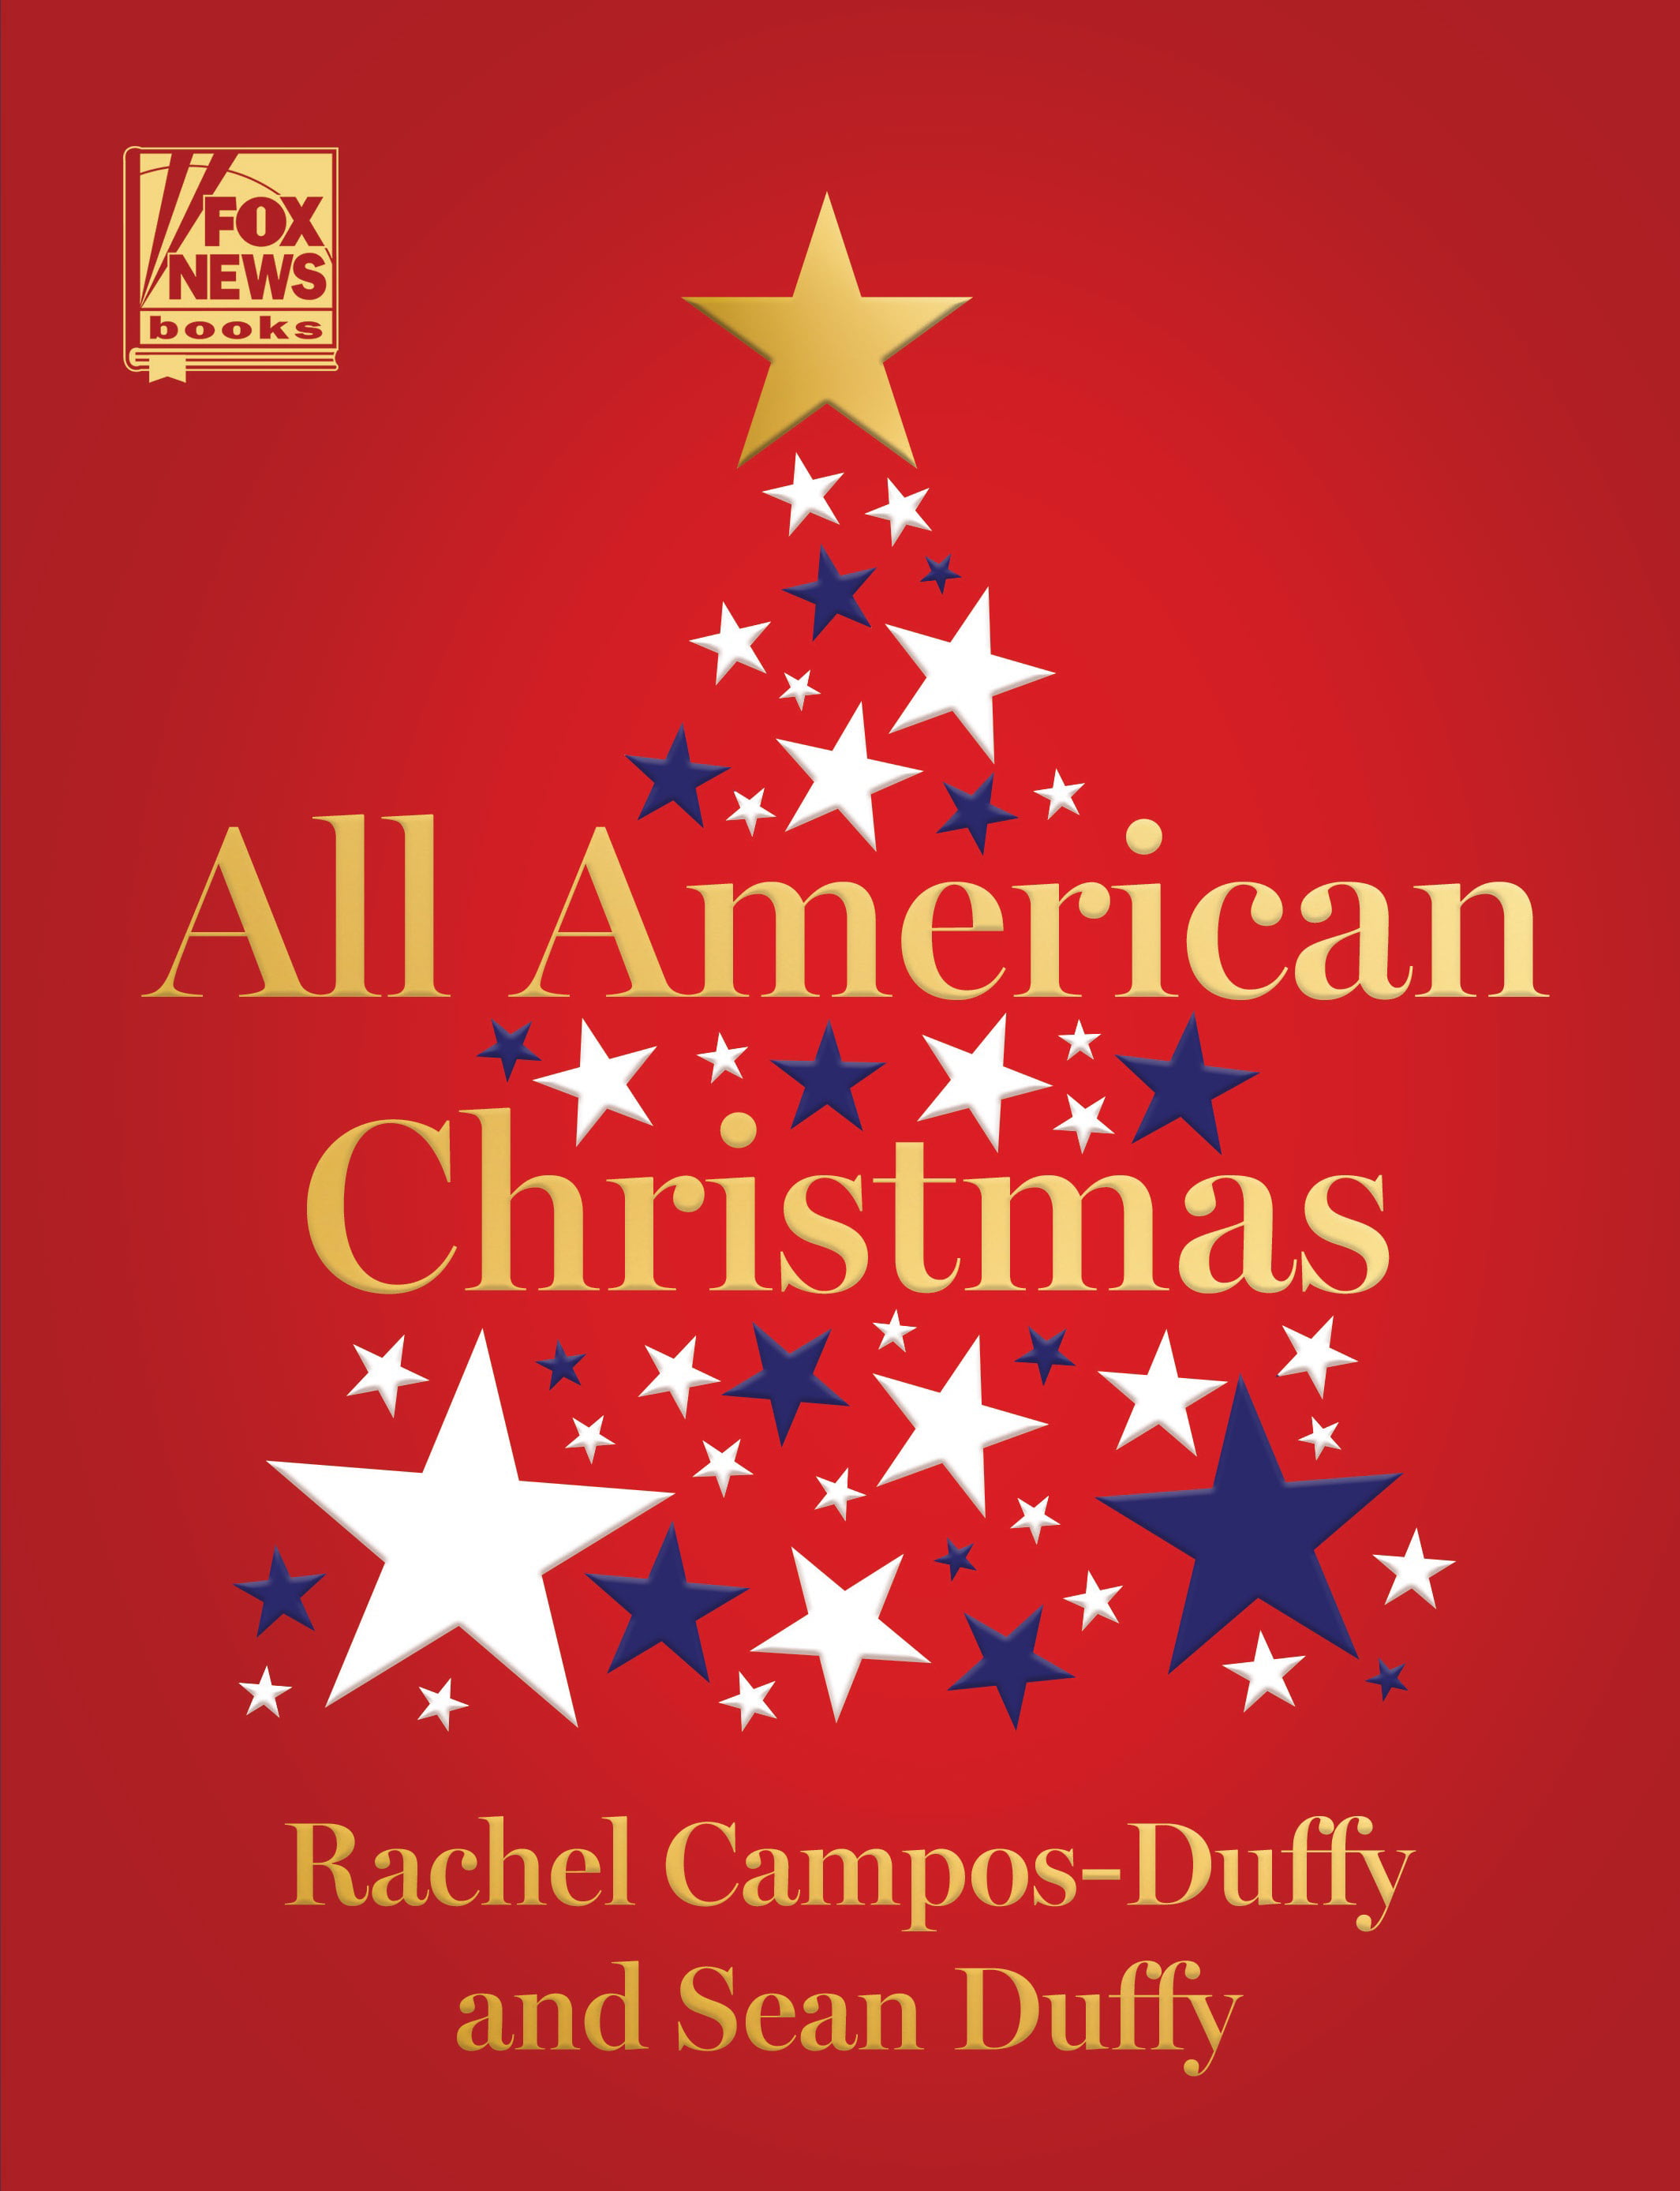 News Books: All American Christmas (Series #3)